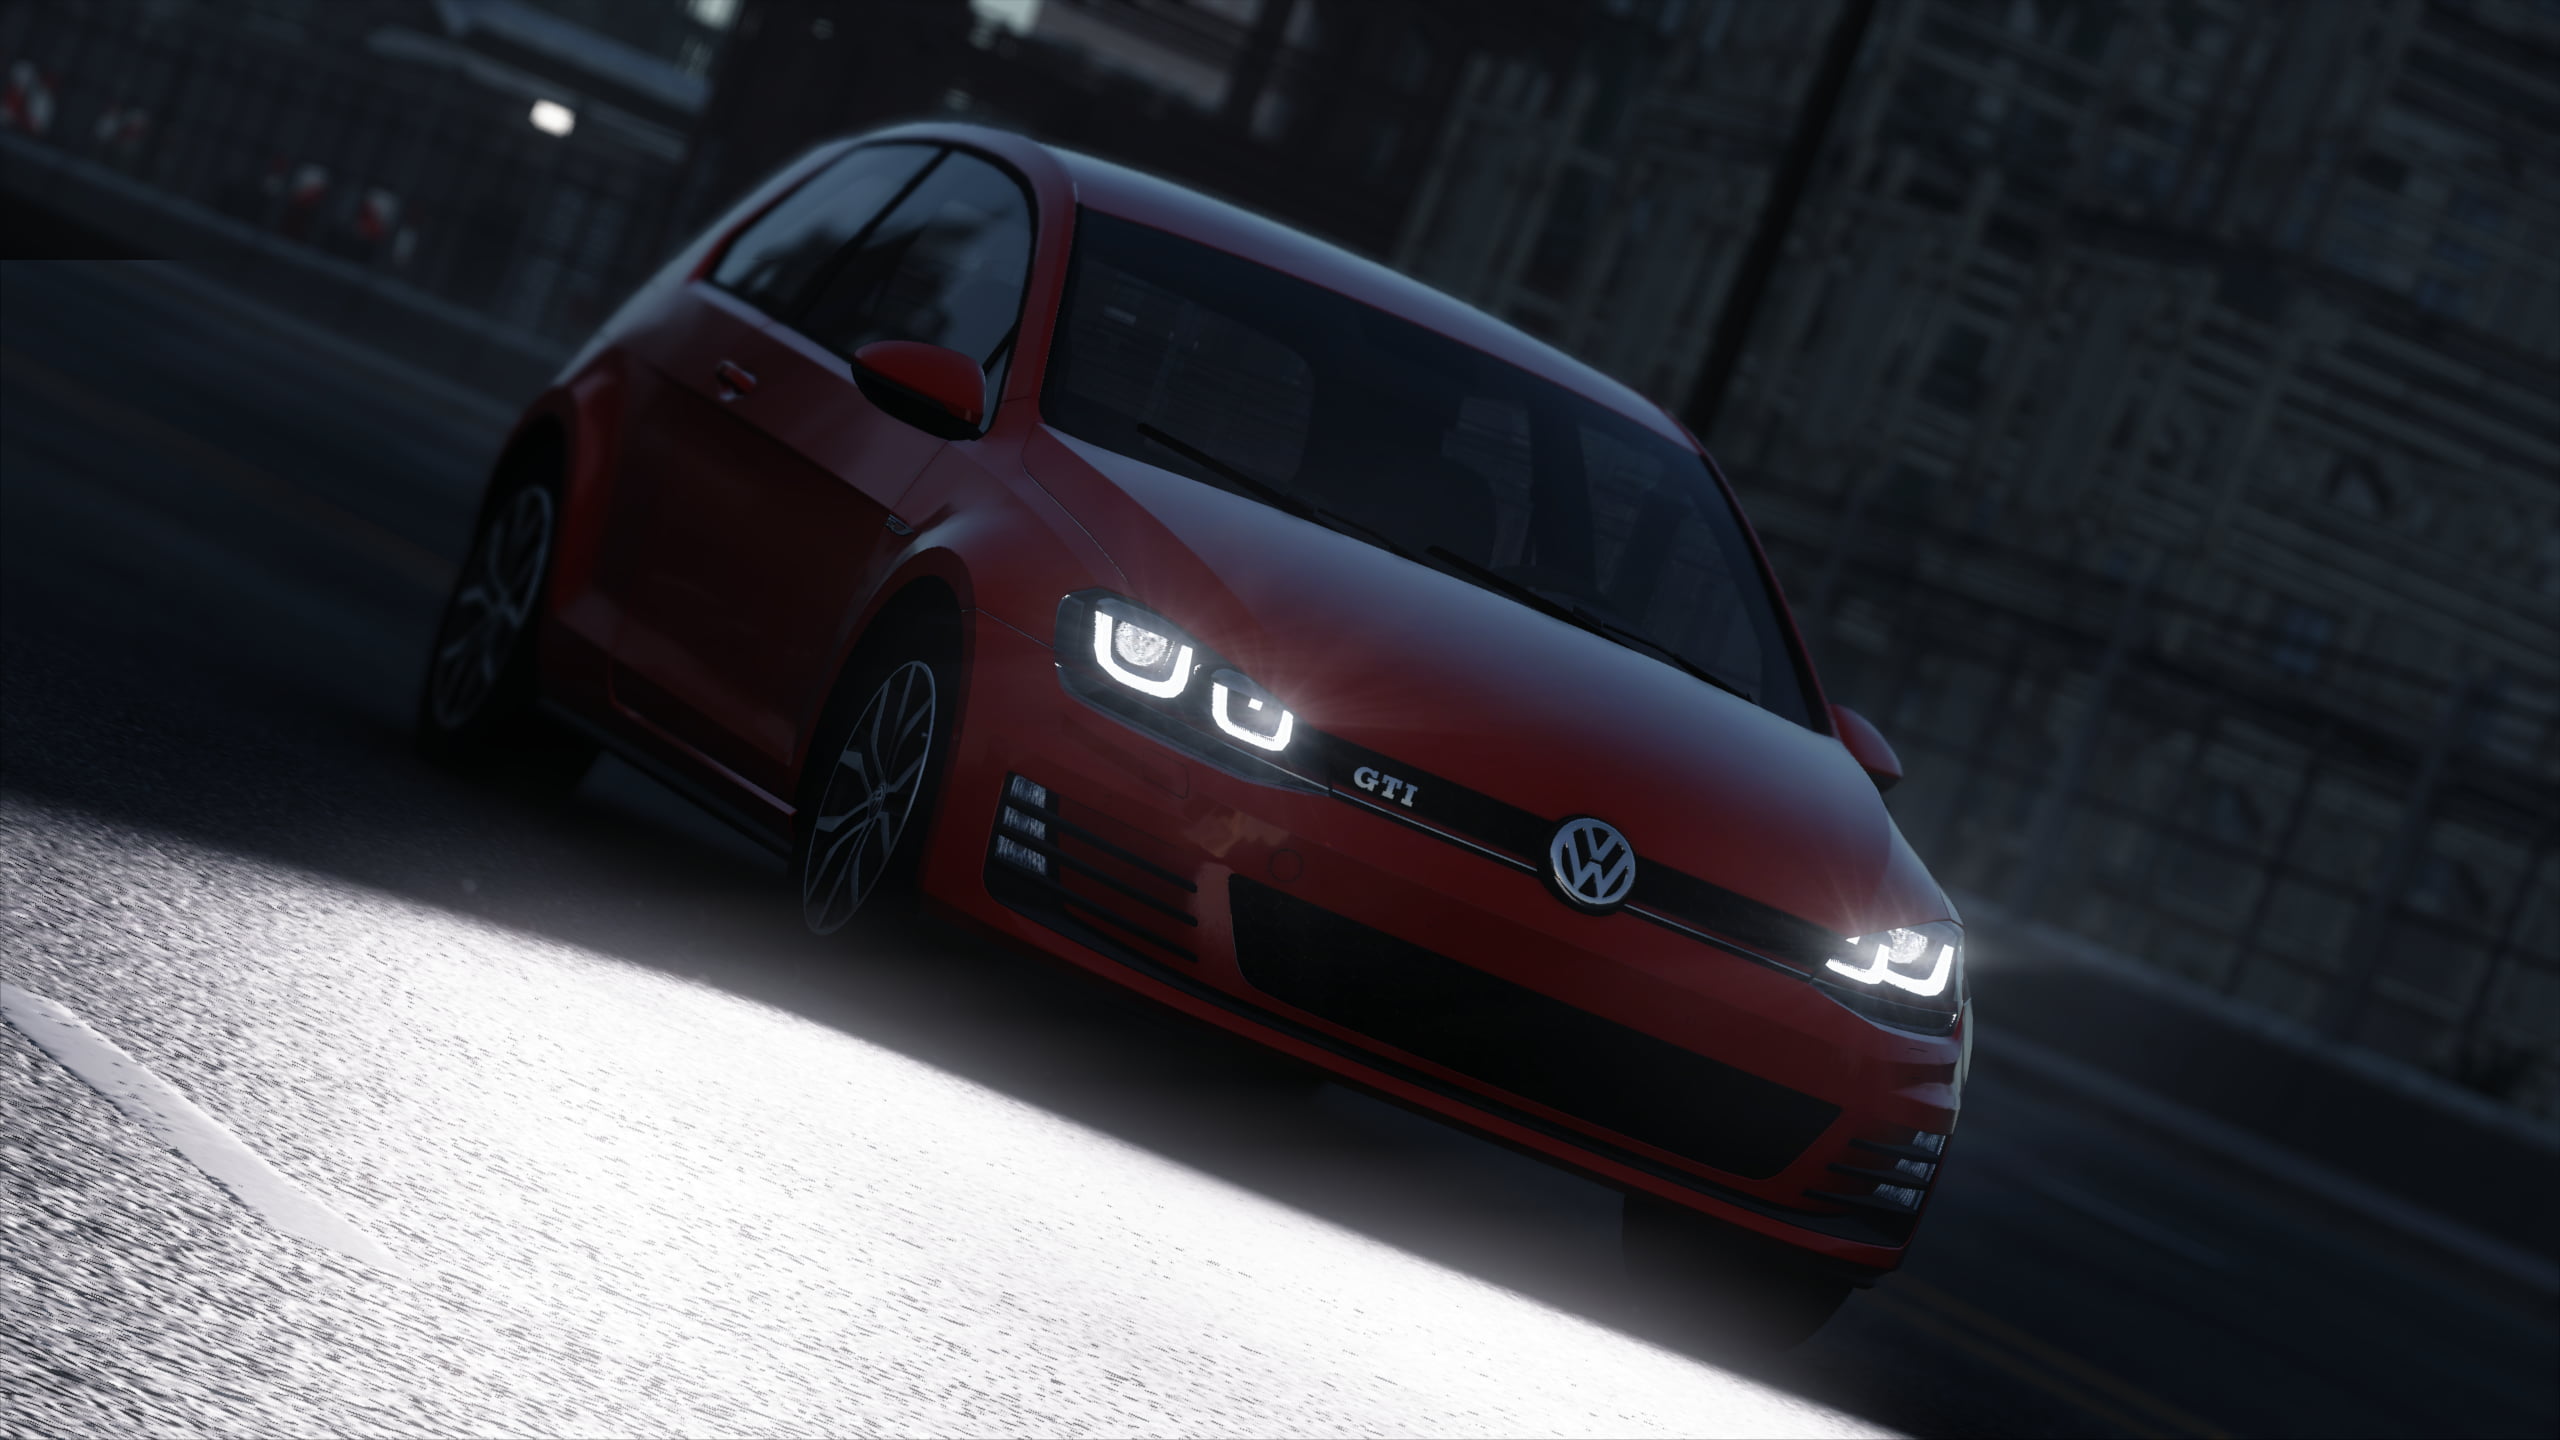 red Volkswagen Golf GTI 3-door hatchback, video games, The Crew, car, light...